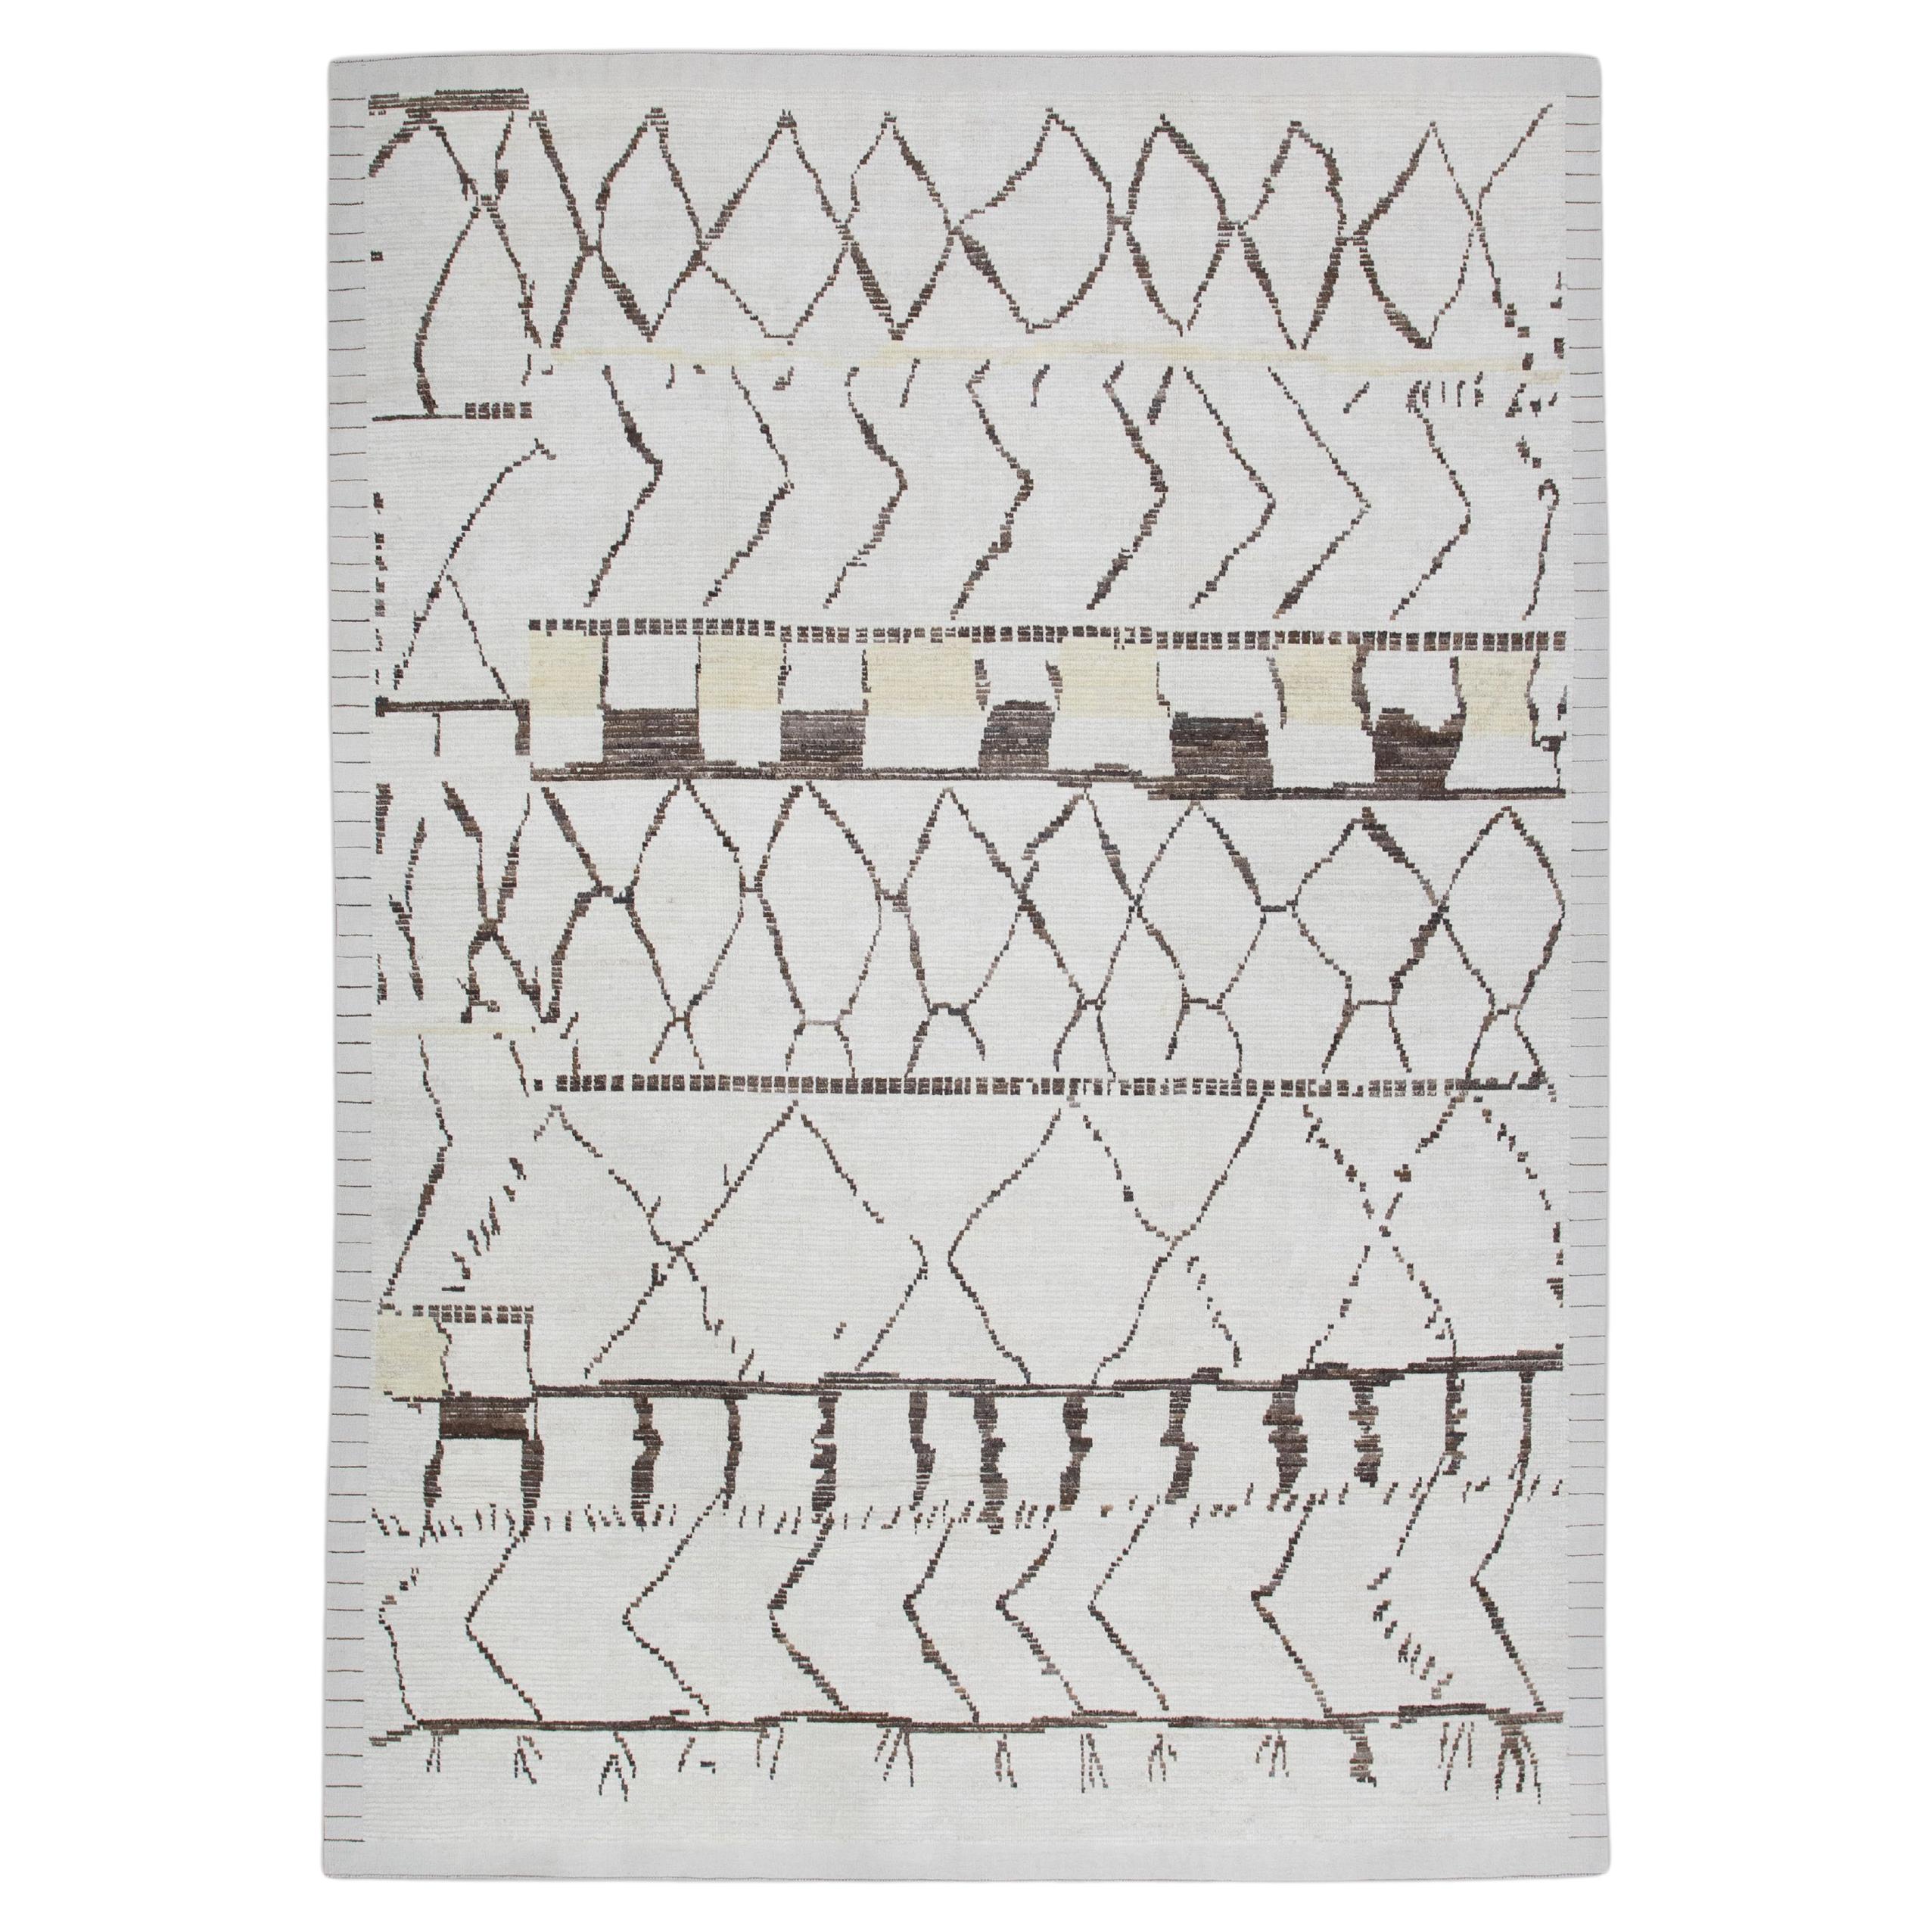  Handmade Wool Tulu Rug in Geometric Design 9'3" x 12'9"